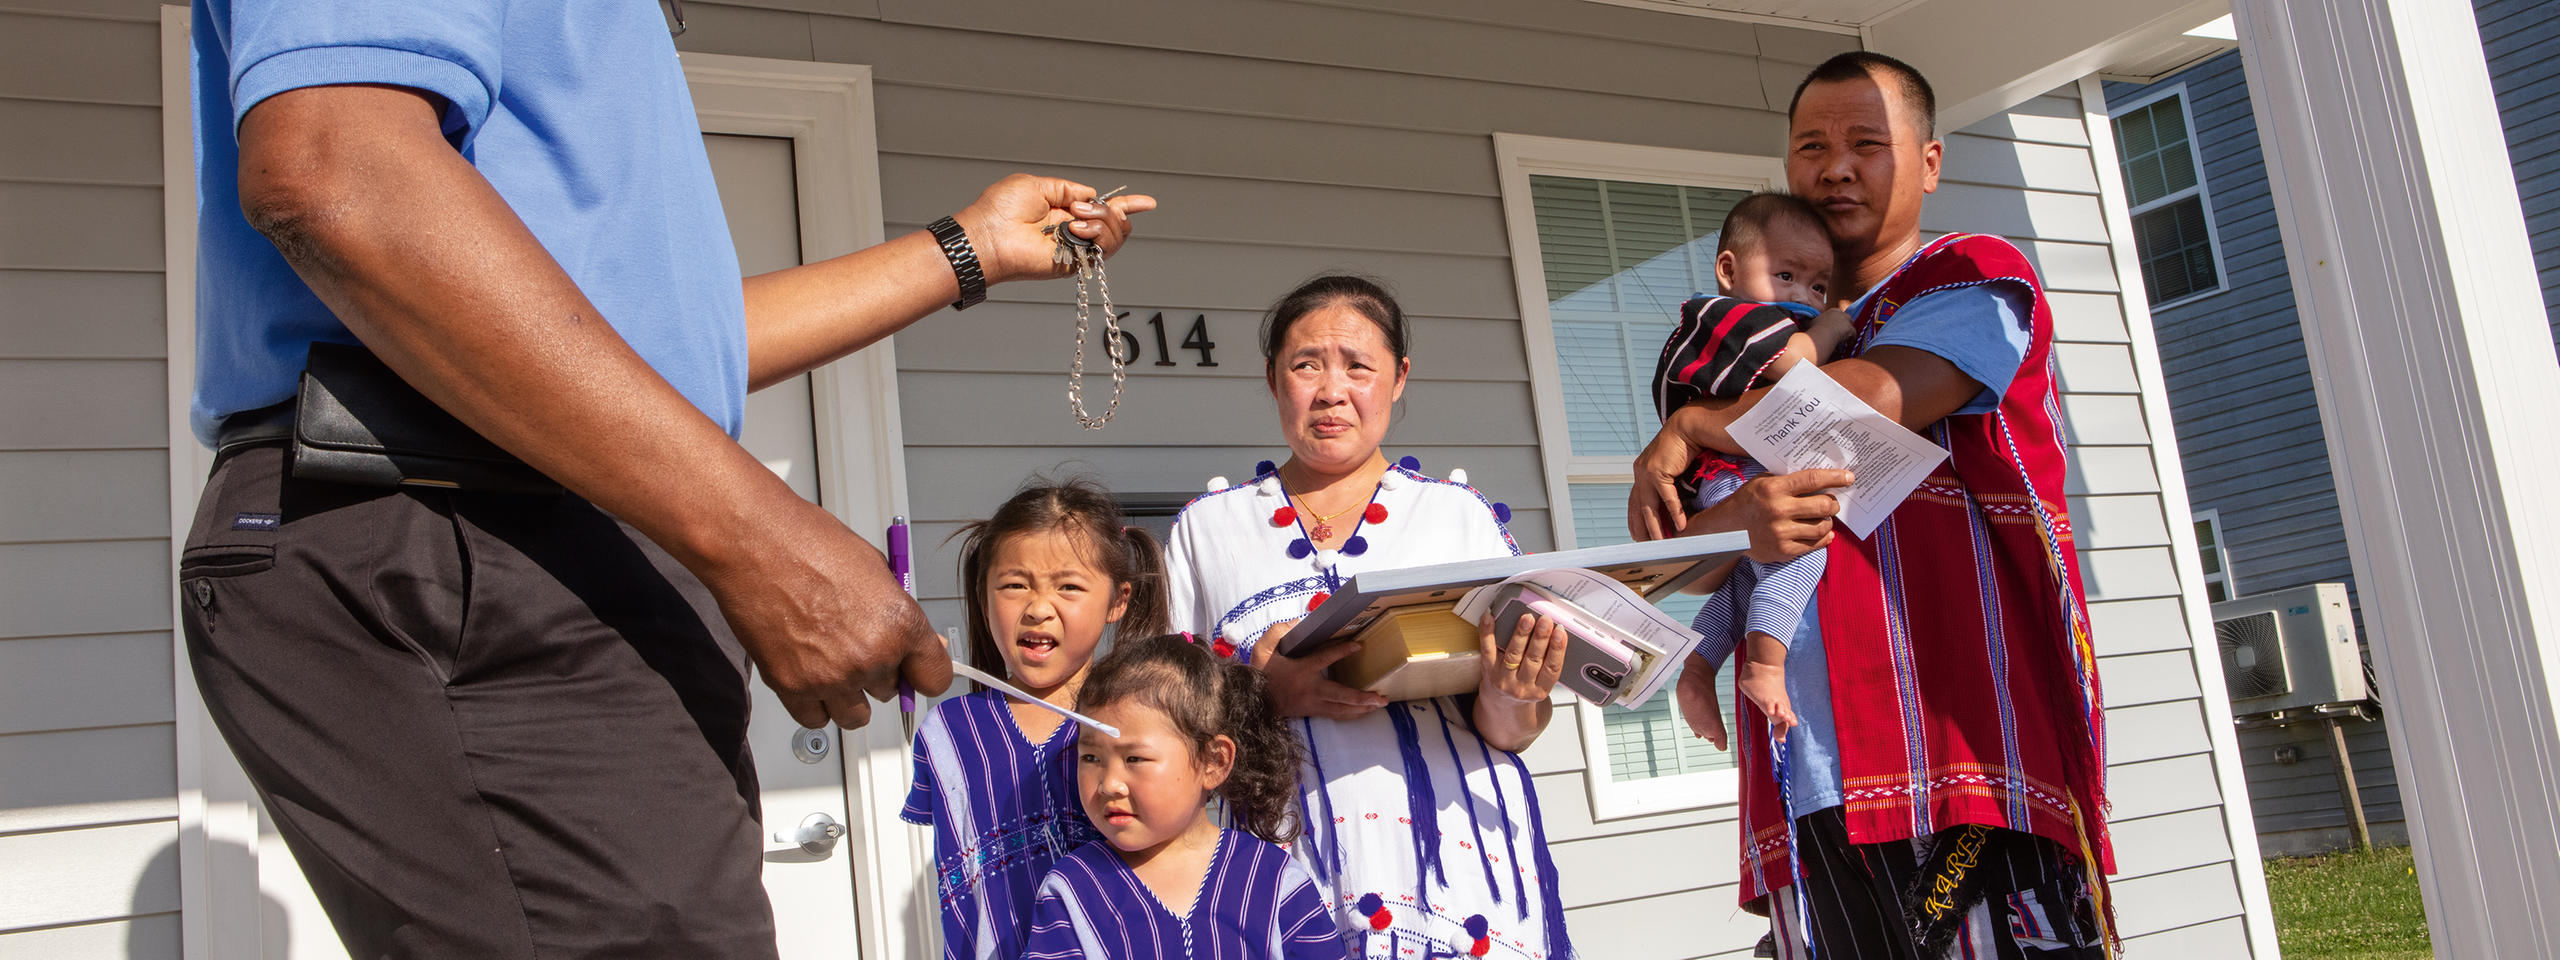 Famille asiatique devant une maison américaine.